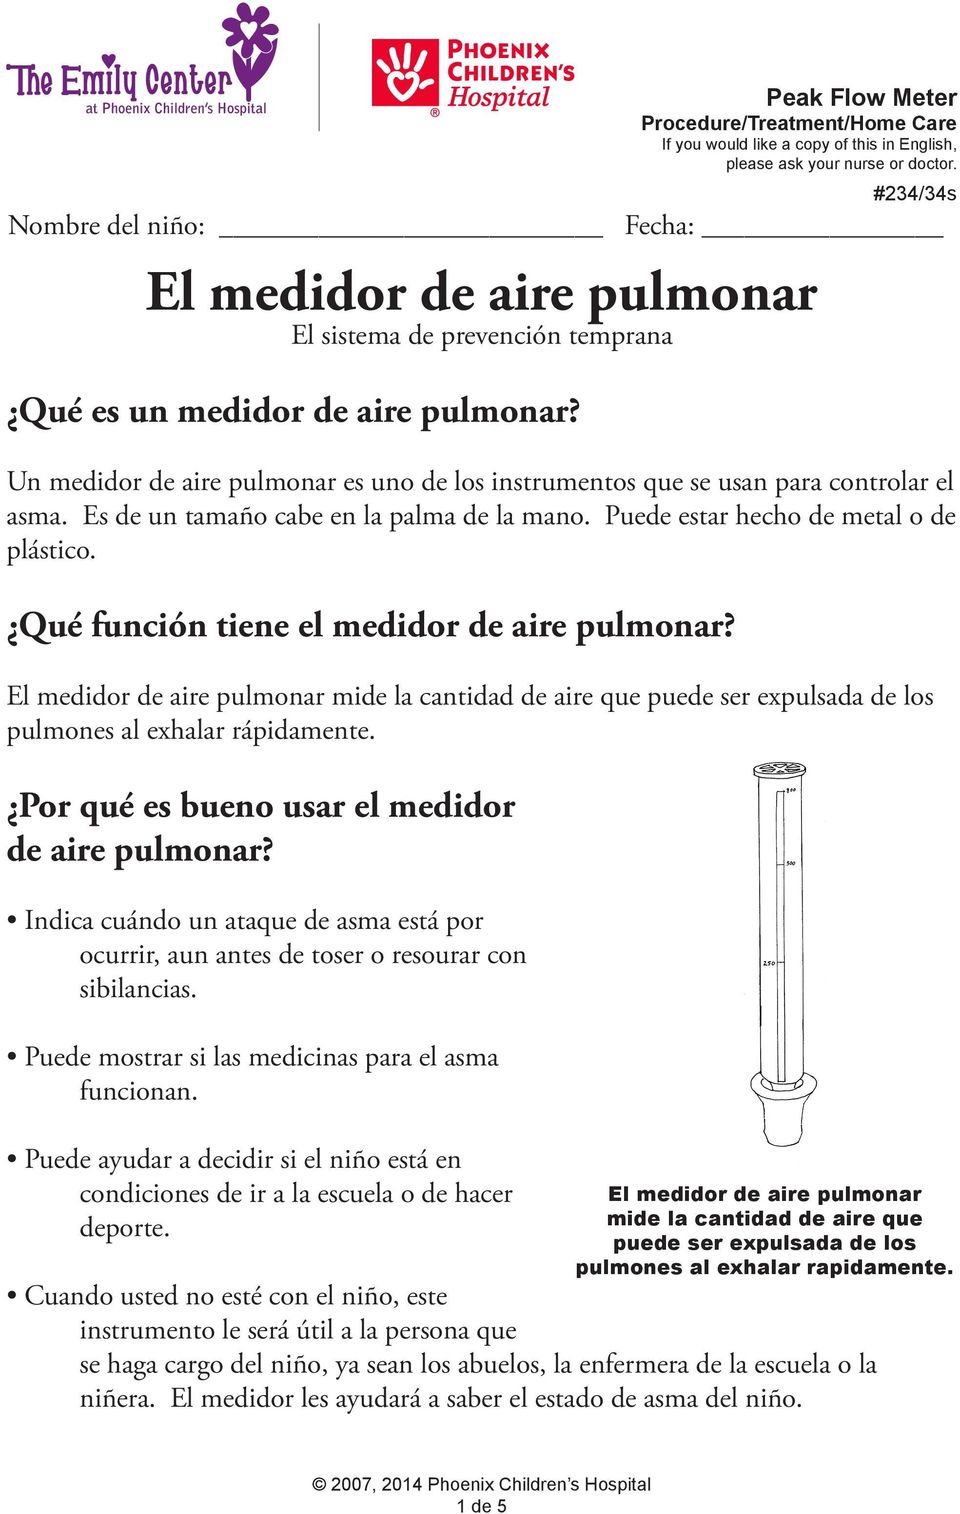 El medidor de aire pulmonar mide la cantidad de aire que puede ser expulsada de los pulmones al exhalar rápidamente. Por qué es bueno usar el medidor de aire pulmonar?